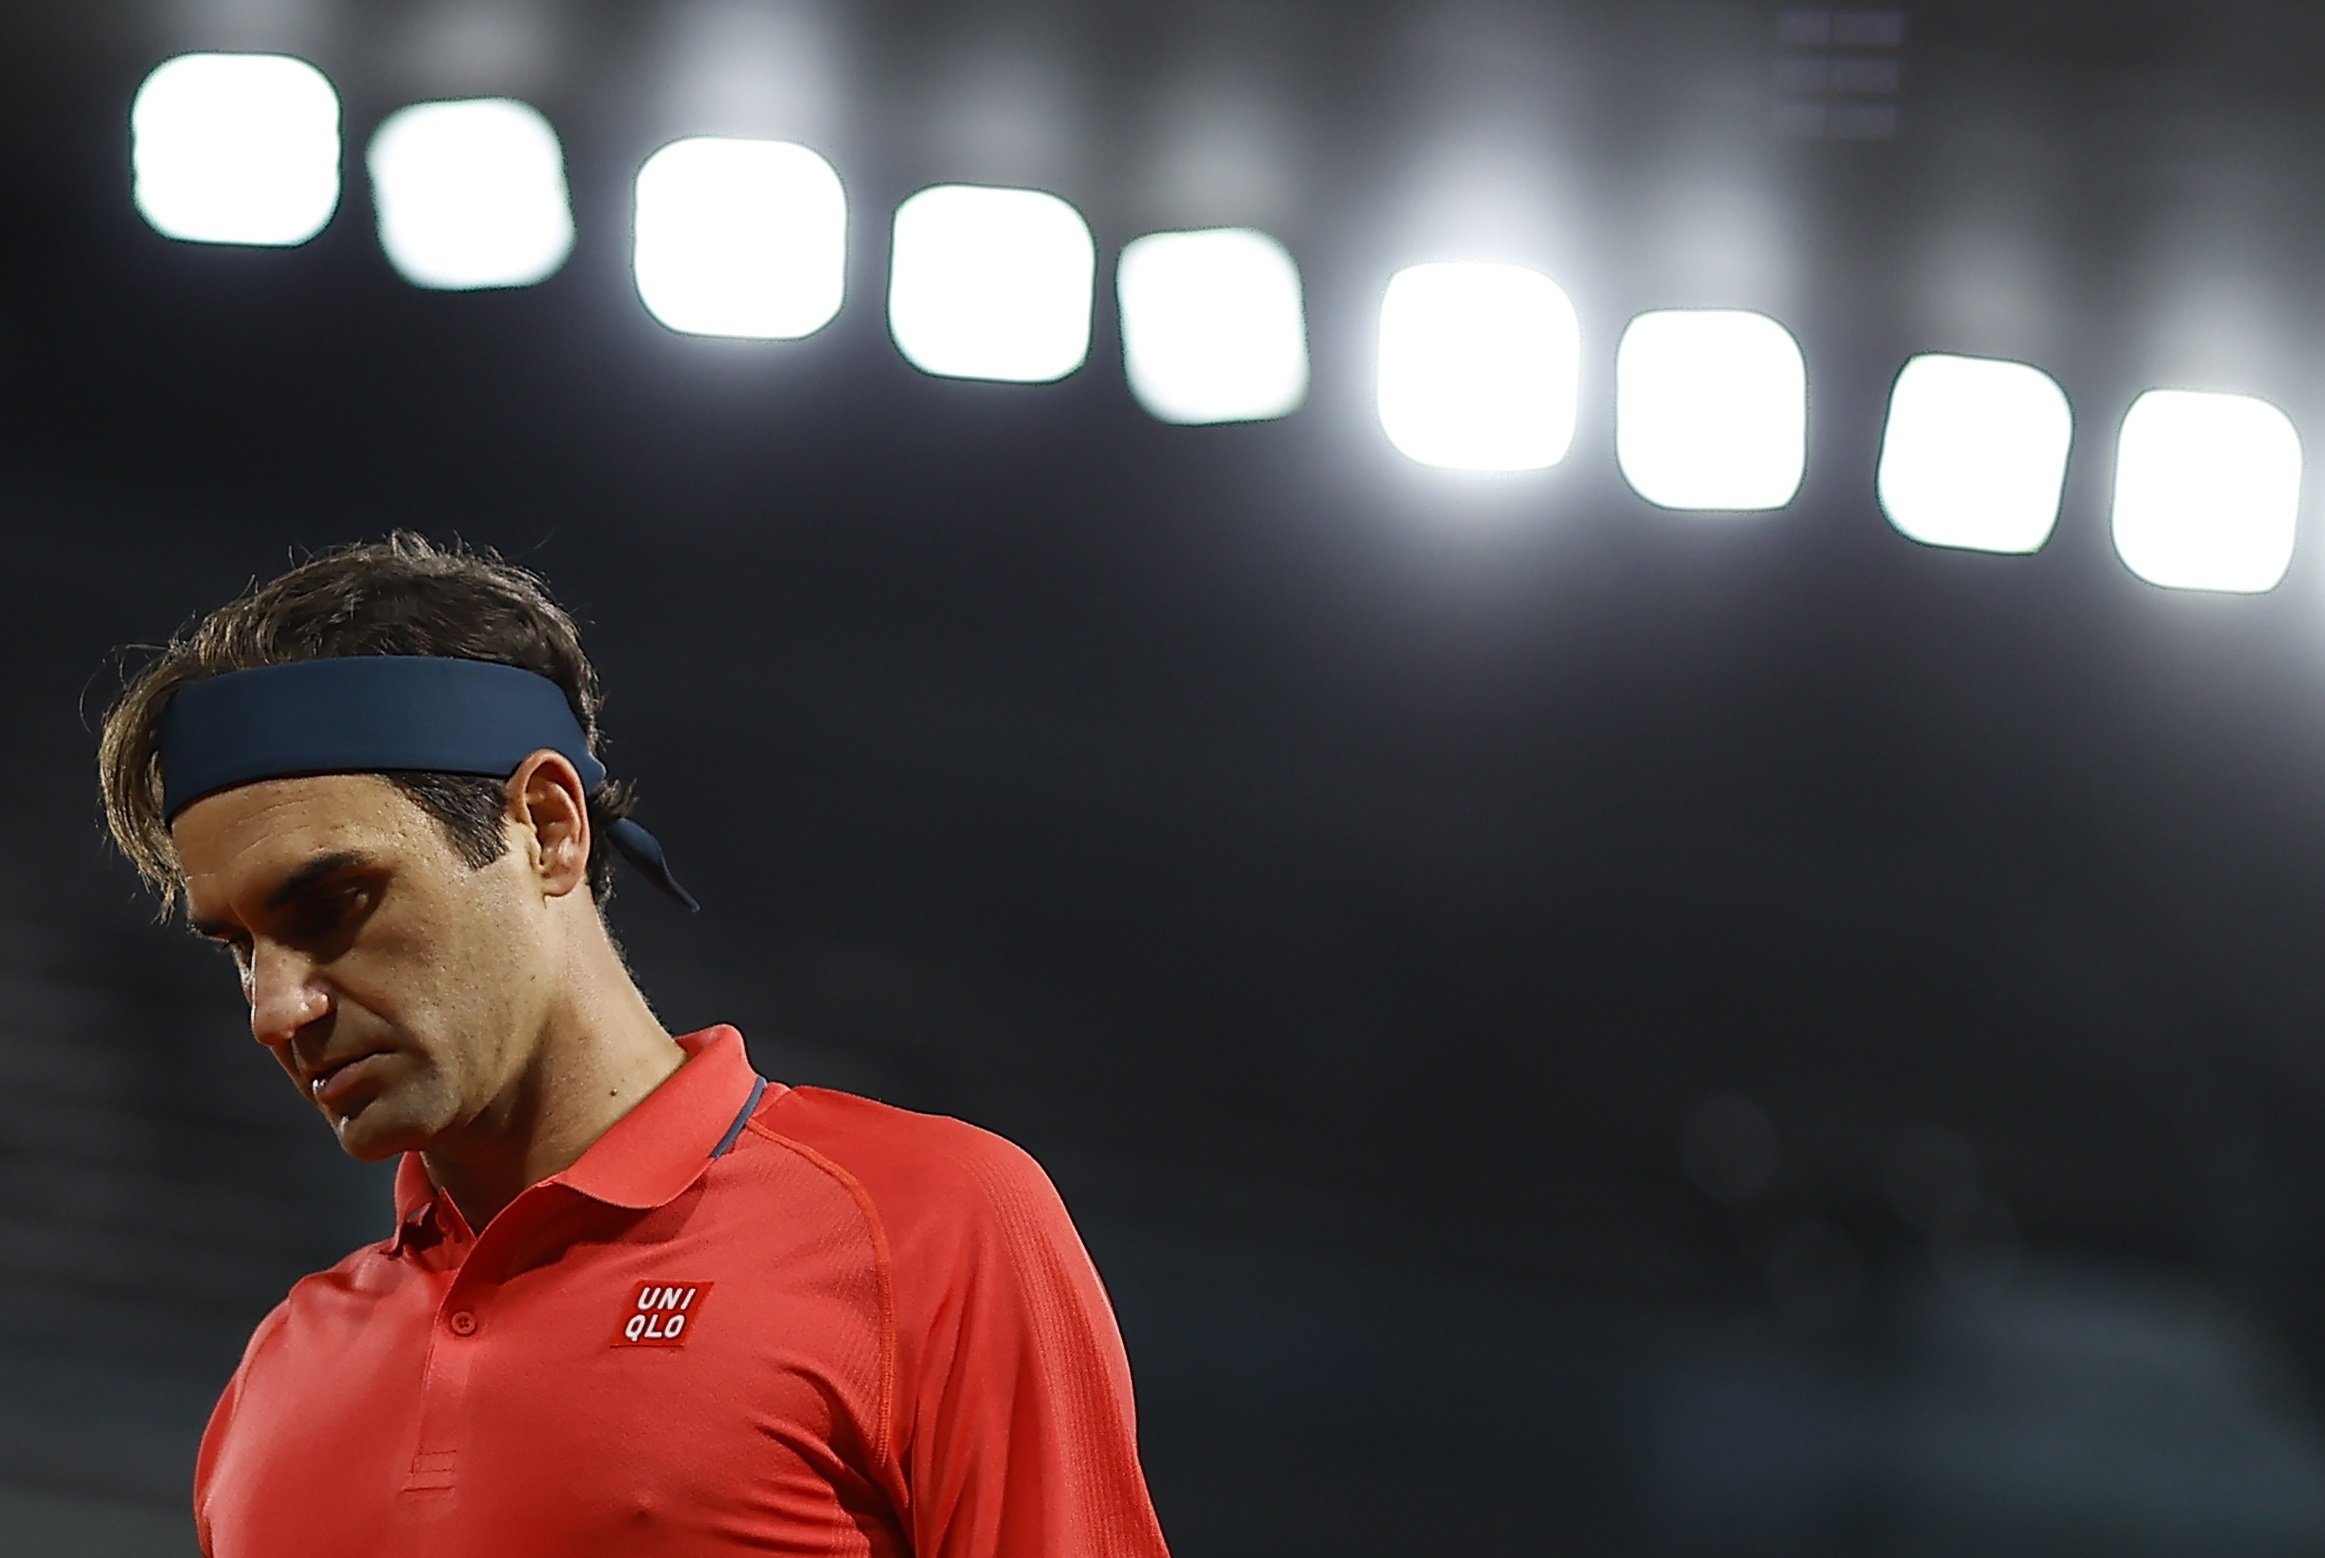 Adeu preocupant de Federer: es retira de Roland Garros